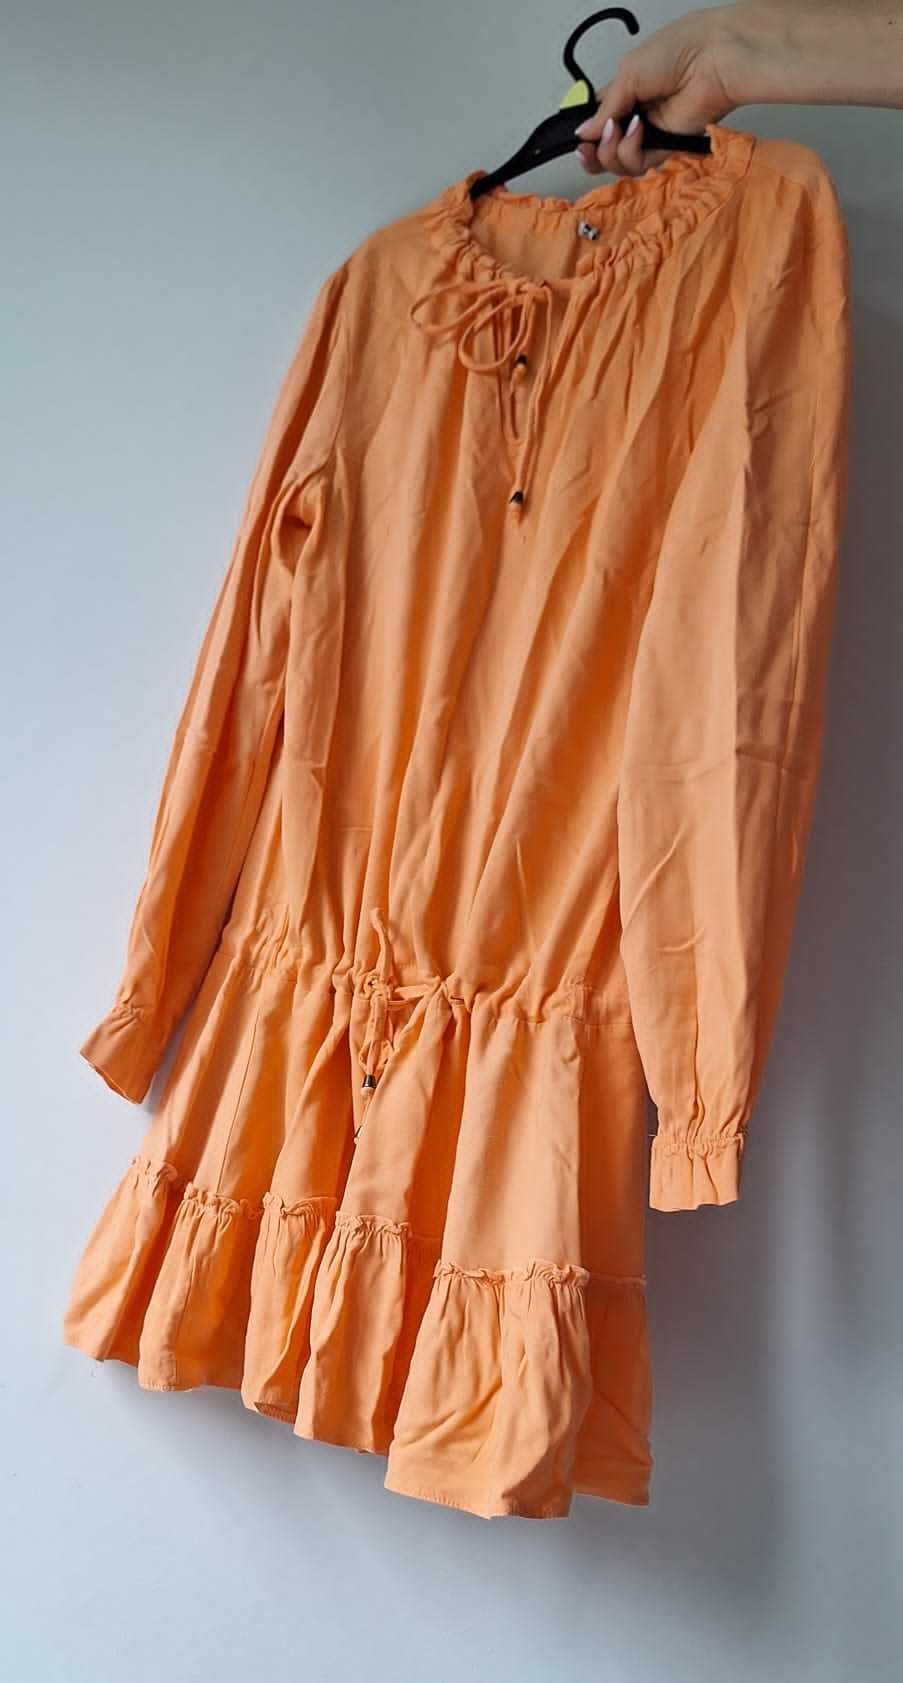 sukienka przewiewna na lato pomarańczowa S